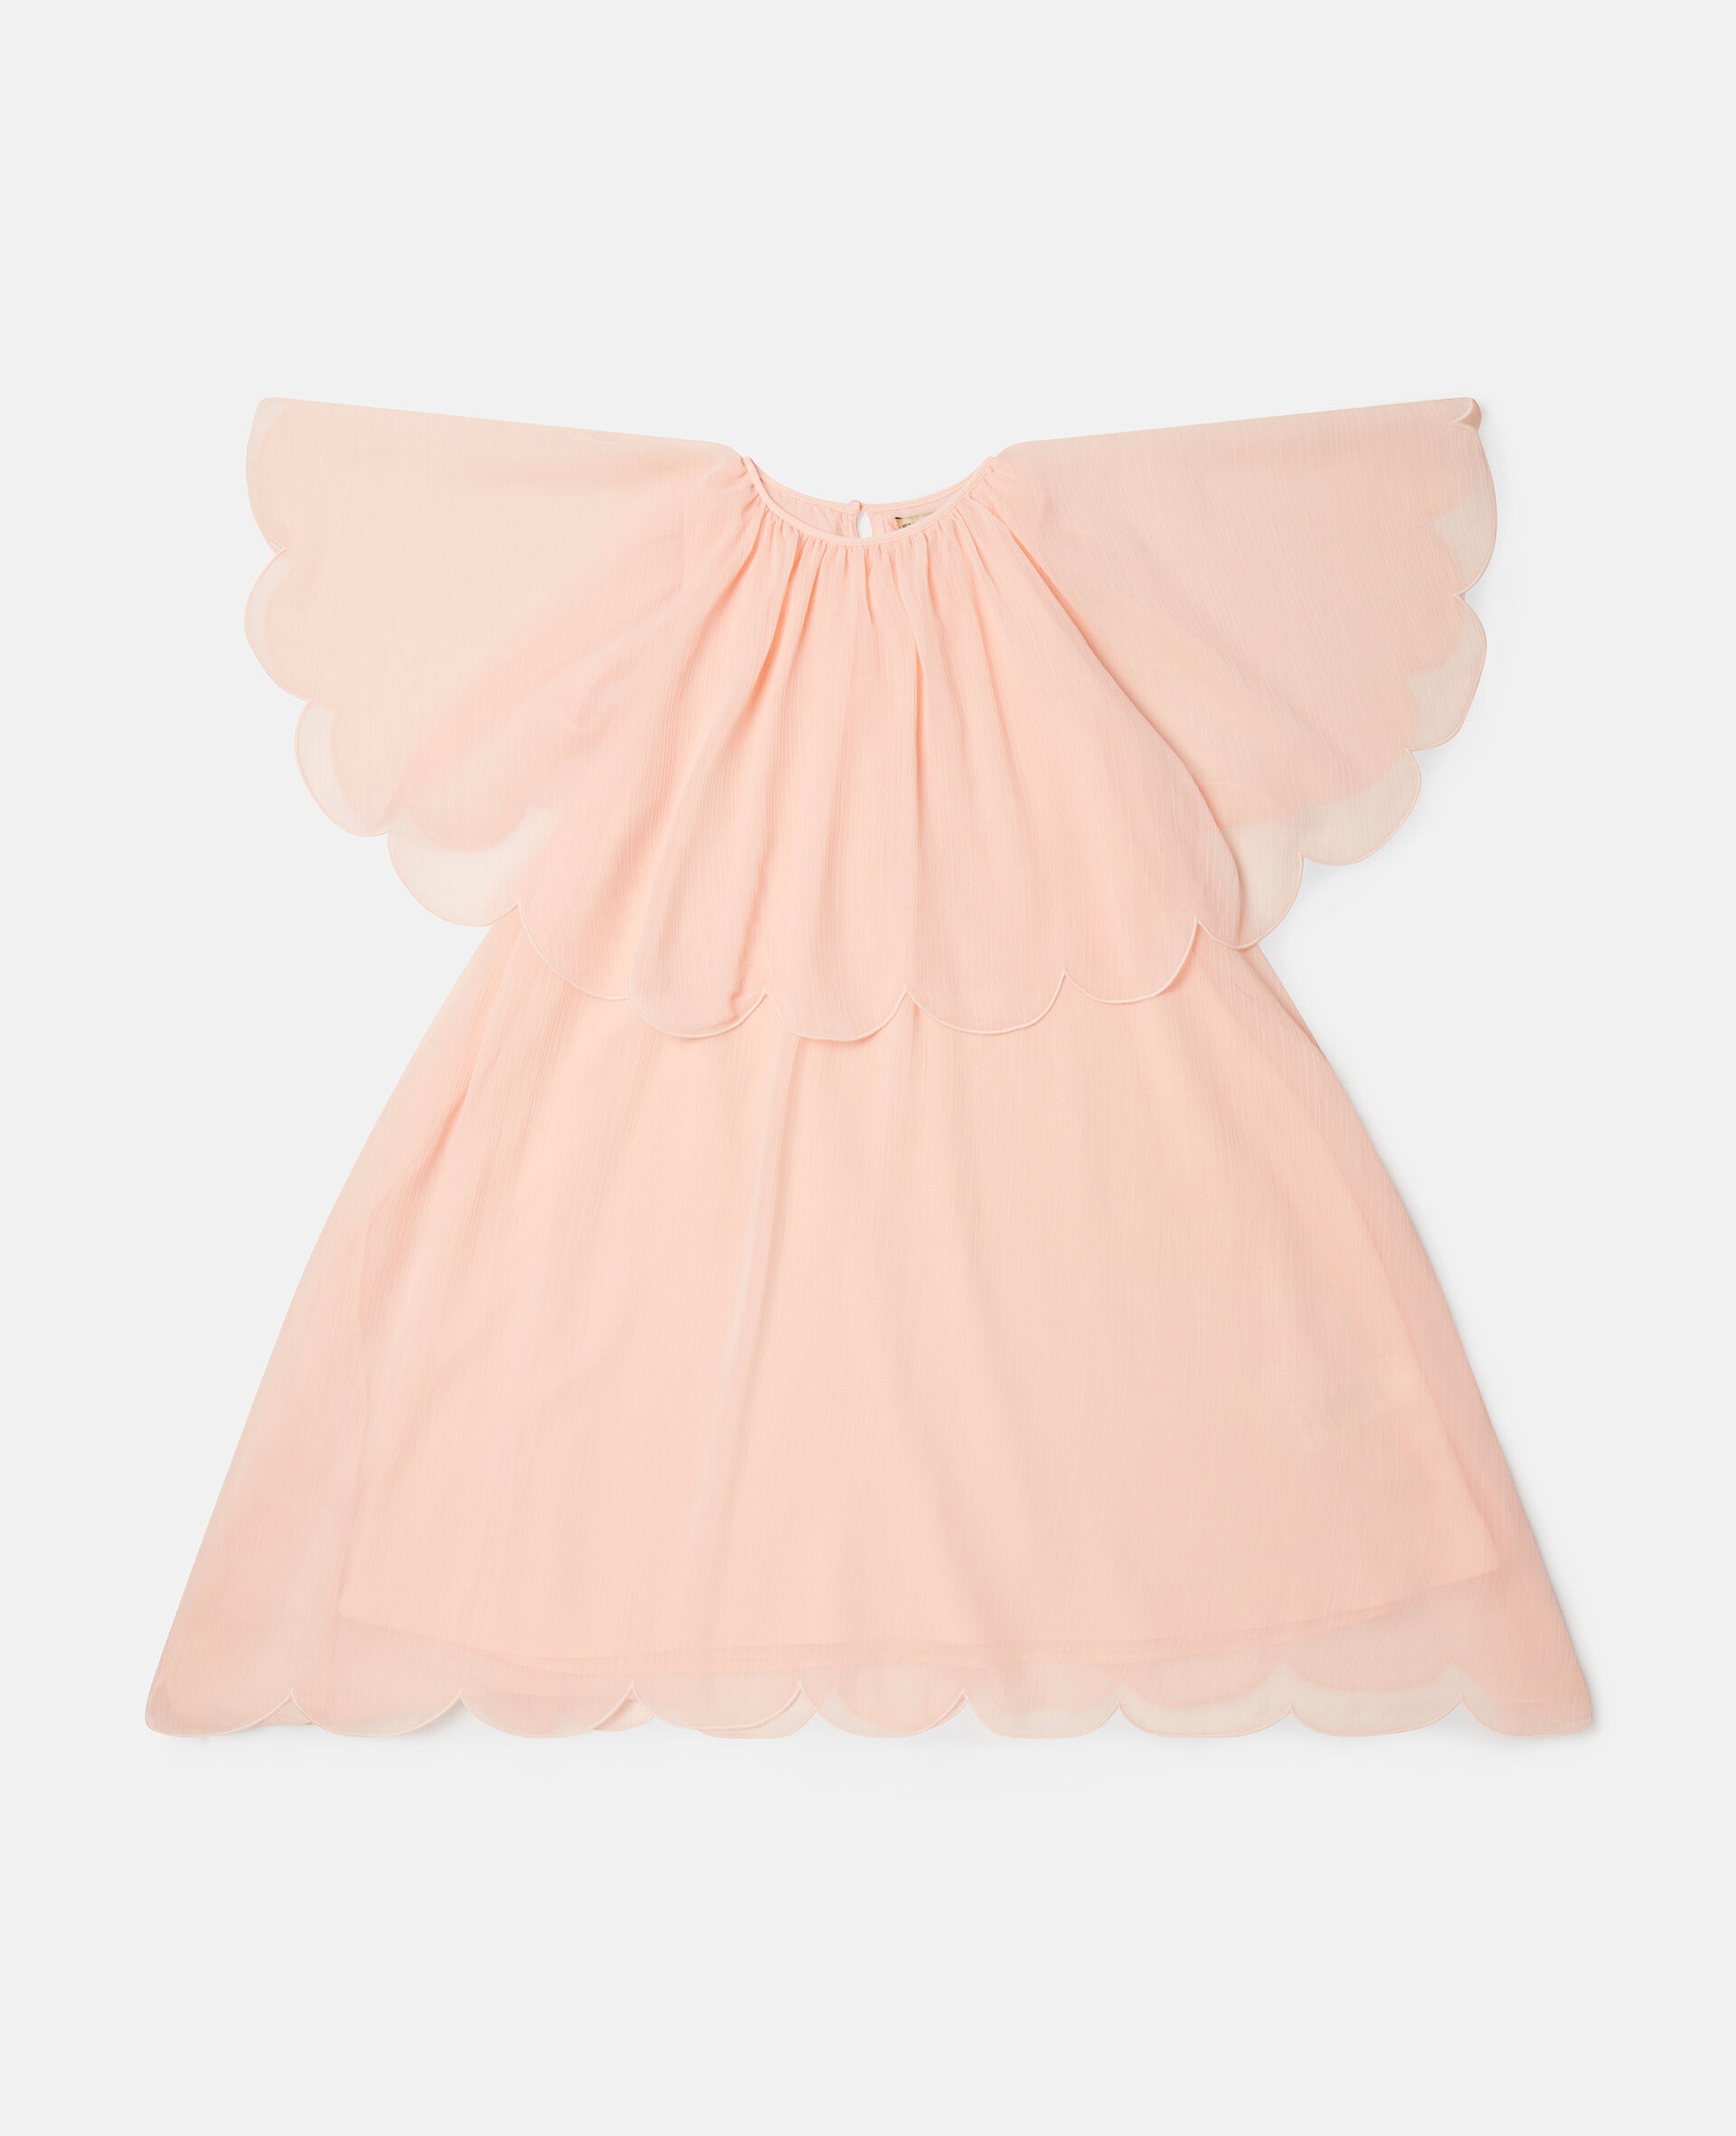 扇形边礼服裙-粉色-medium